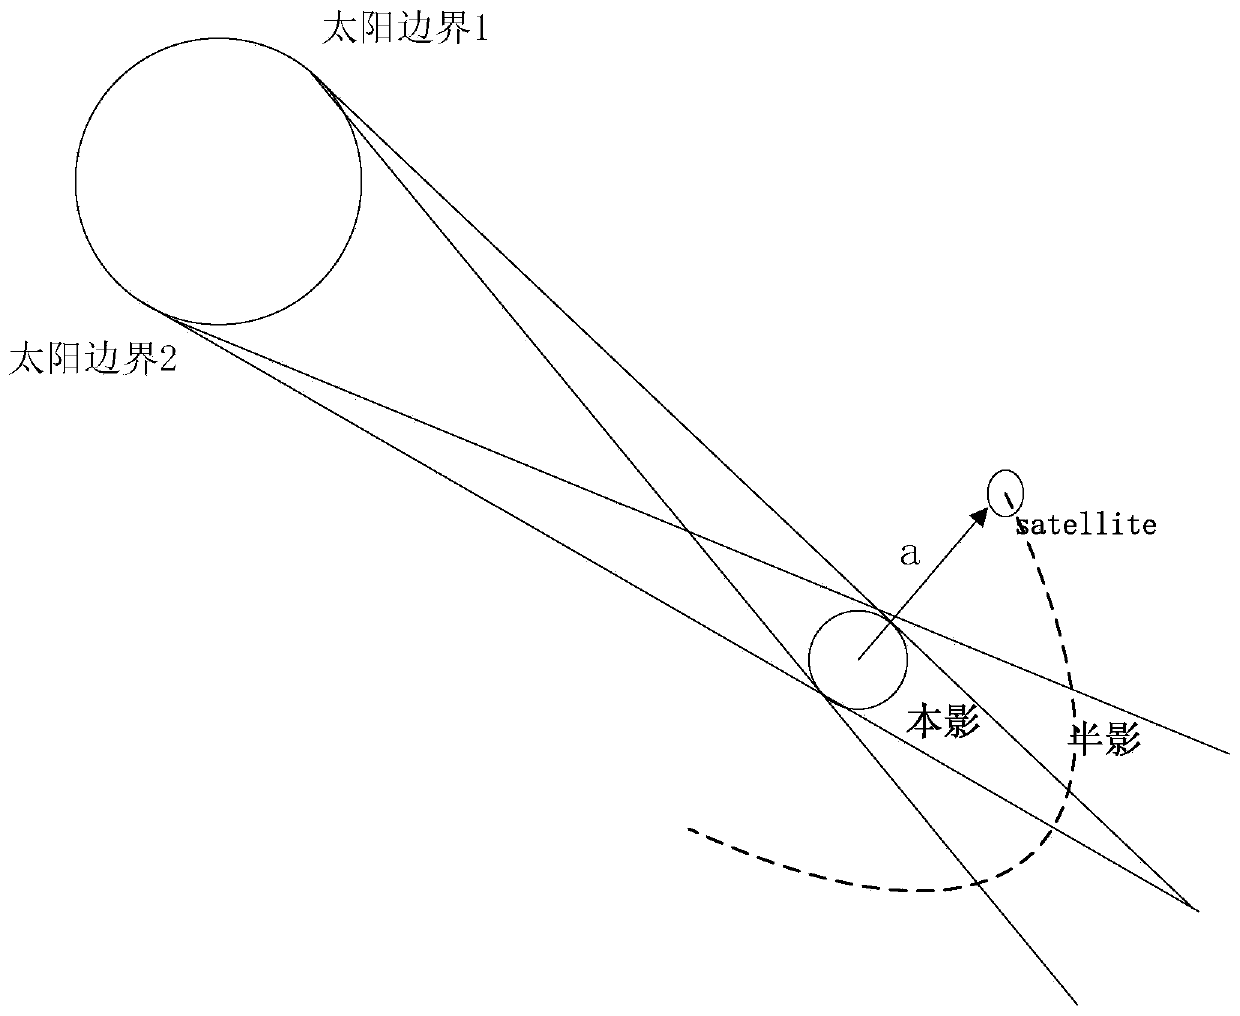 Earthlight light pressure perturbation modeling method for navigational satellite complicated model